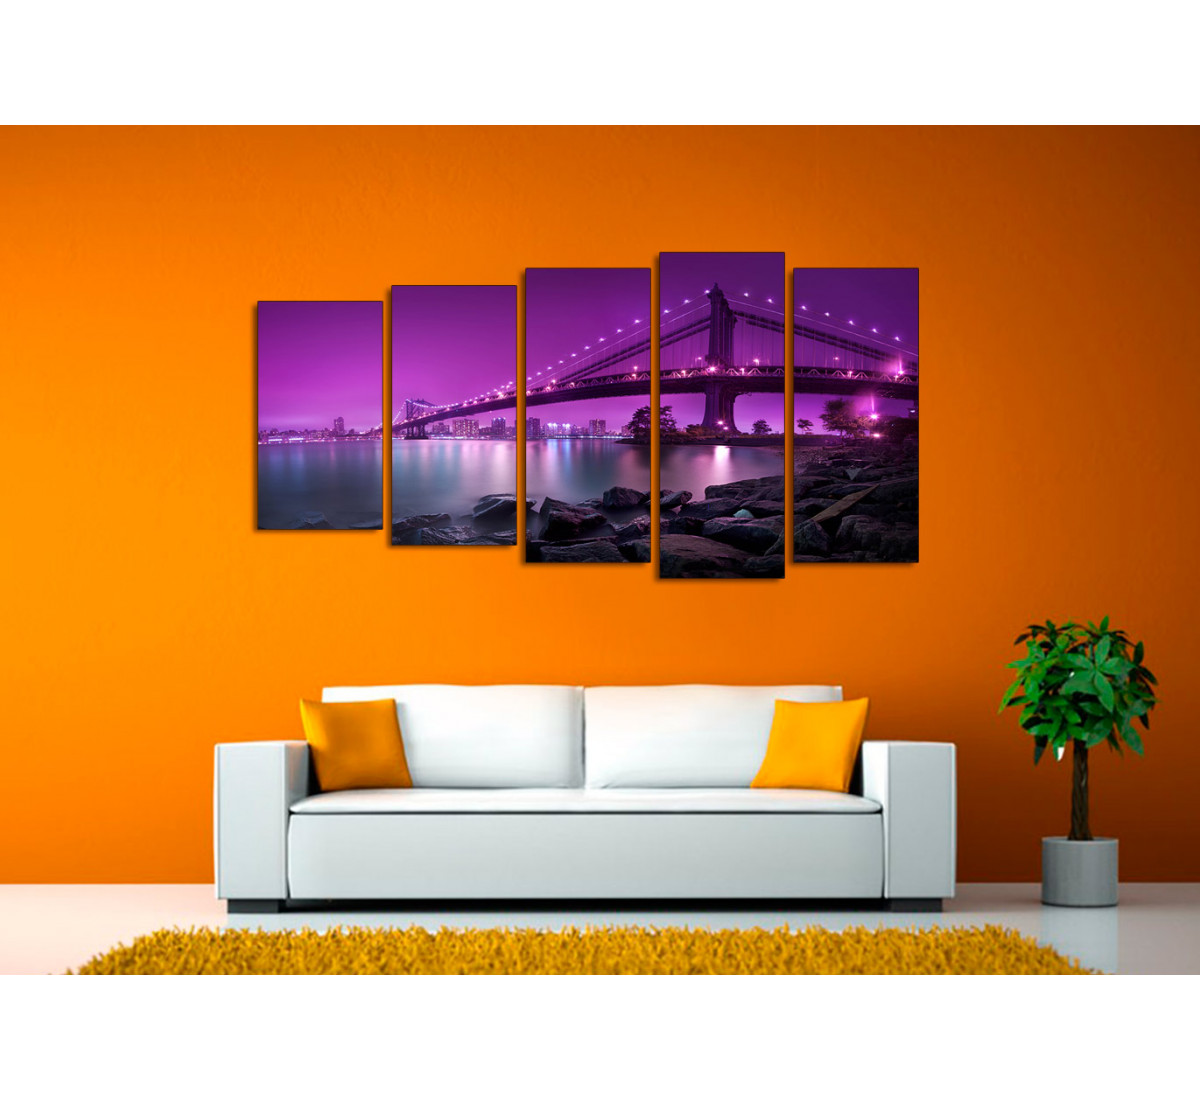 Картины в интерьере гостиной в современном стиле: в рамке на стене, над диваном, три картины в одном стиле - 35 фото